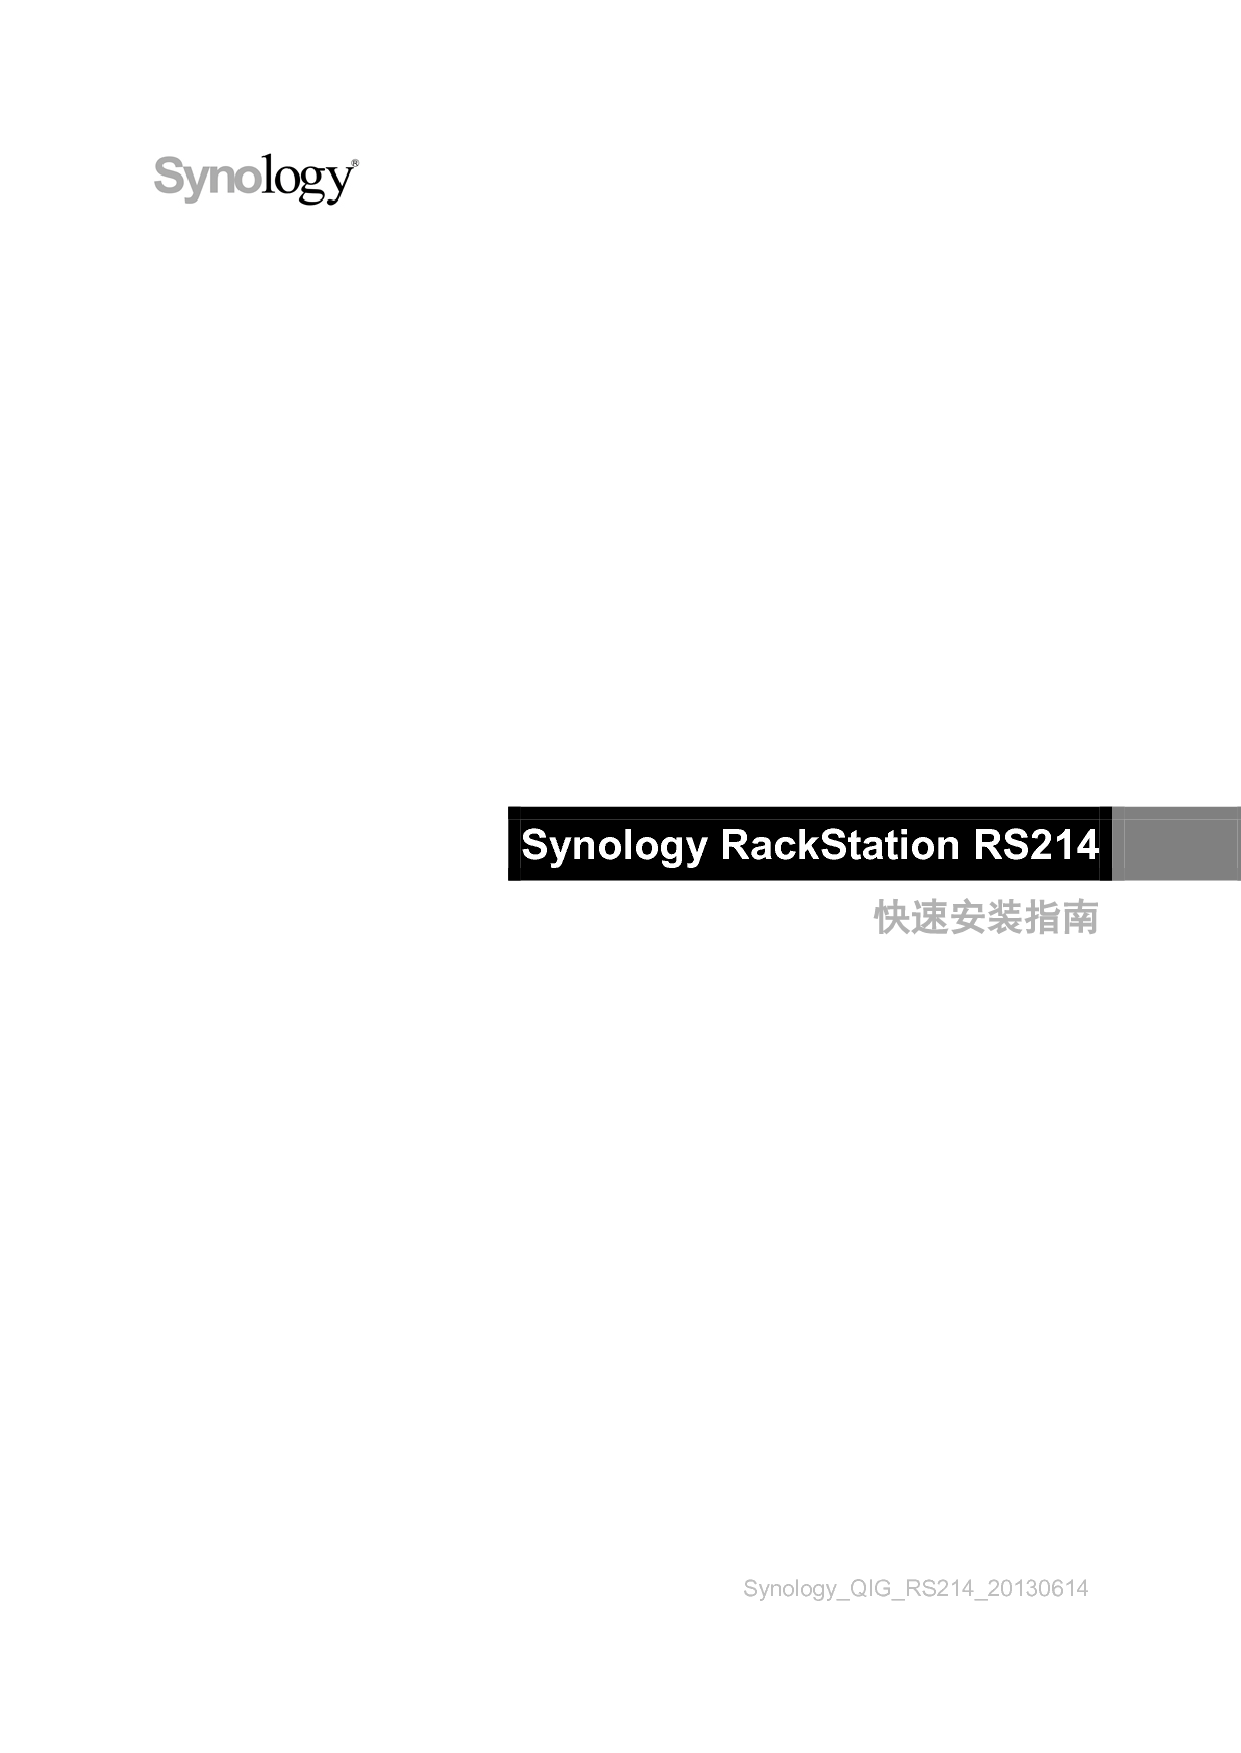 群晖 Synology RS214 快速安装指南 封面